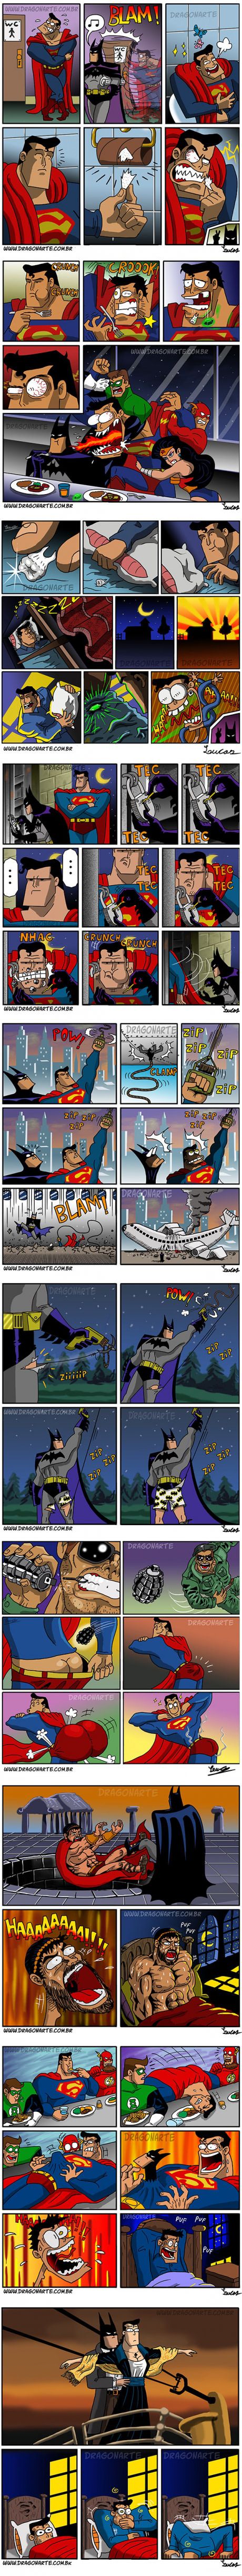 Bat Man & Super man